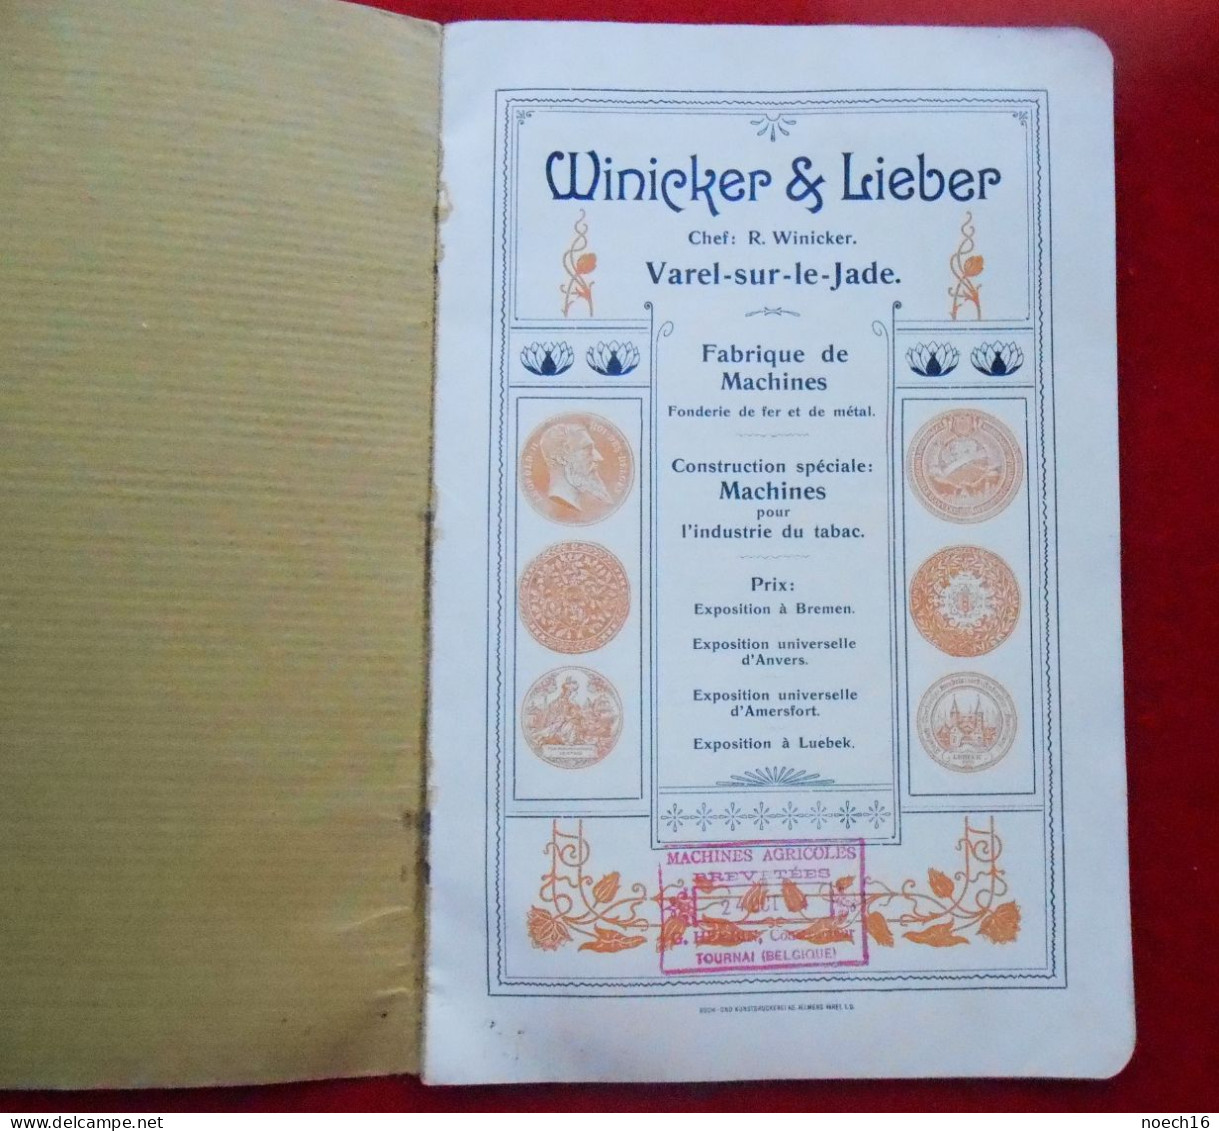 Catalogue Fonderie & Industrie Du Tabac Winicker & Lieber, Varel S. Jade, Allemagne/1904 Constructeur Herbin à Tournai - Lebensmittel